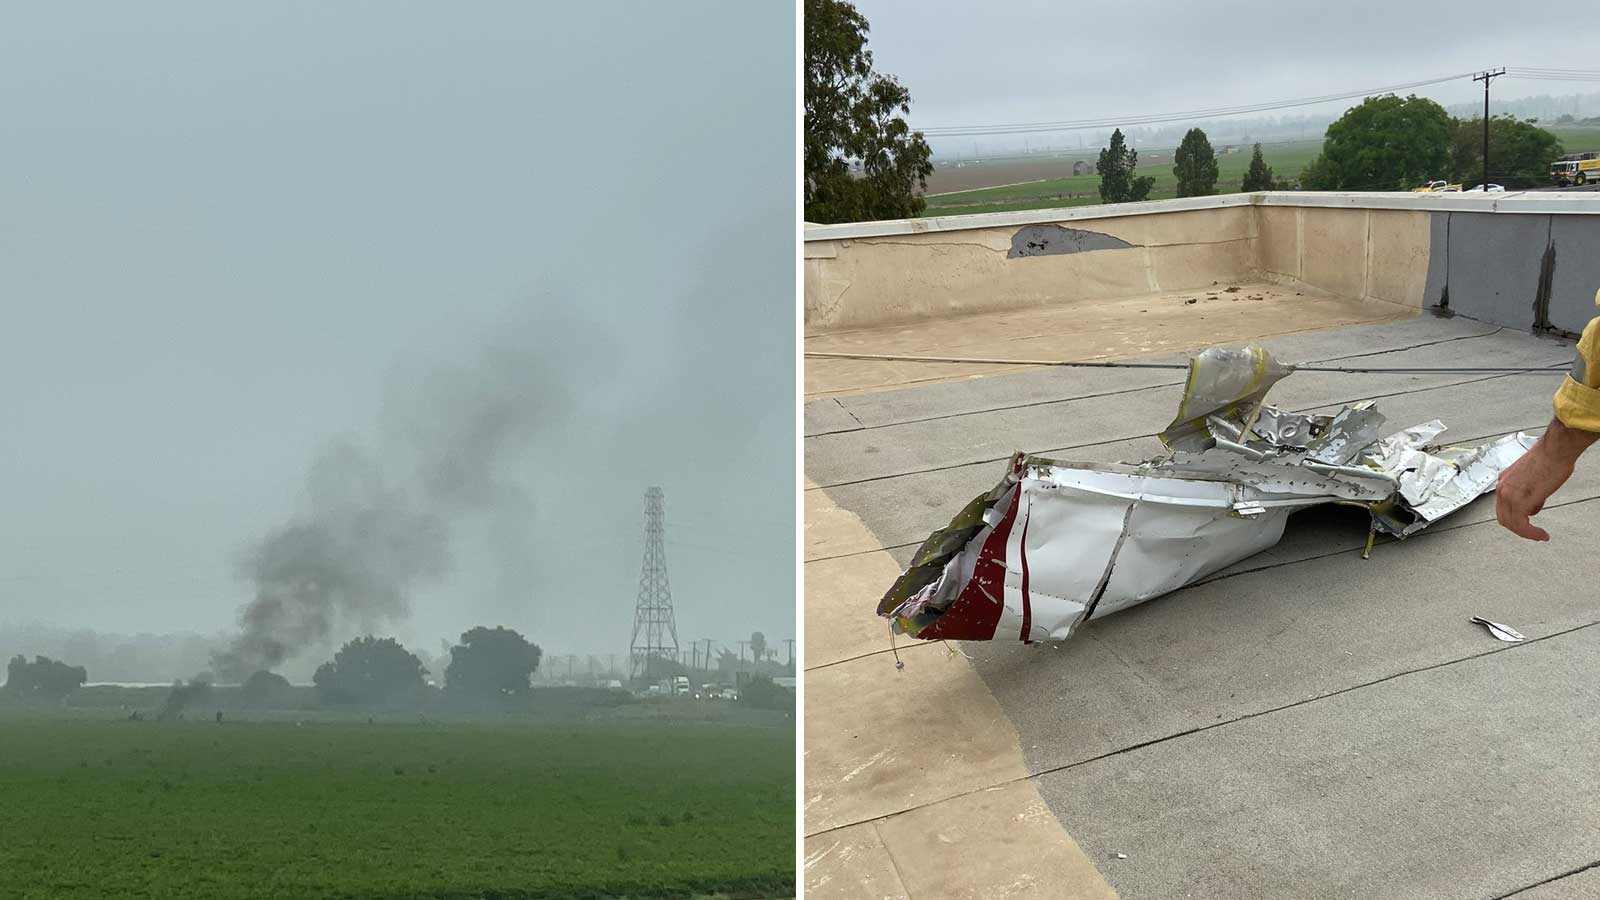 Plane debris and fire from crash near Camarillo, California...